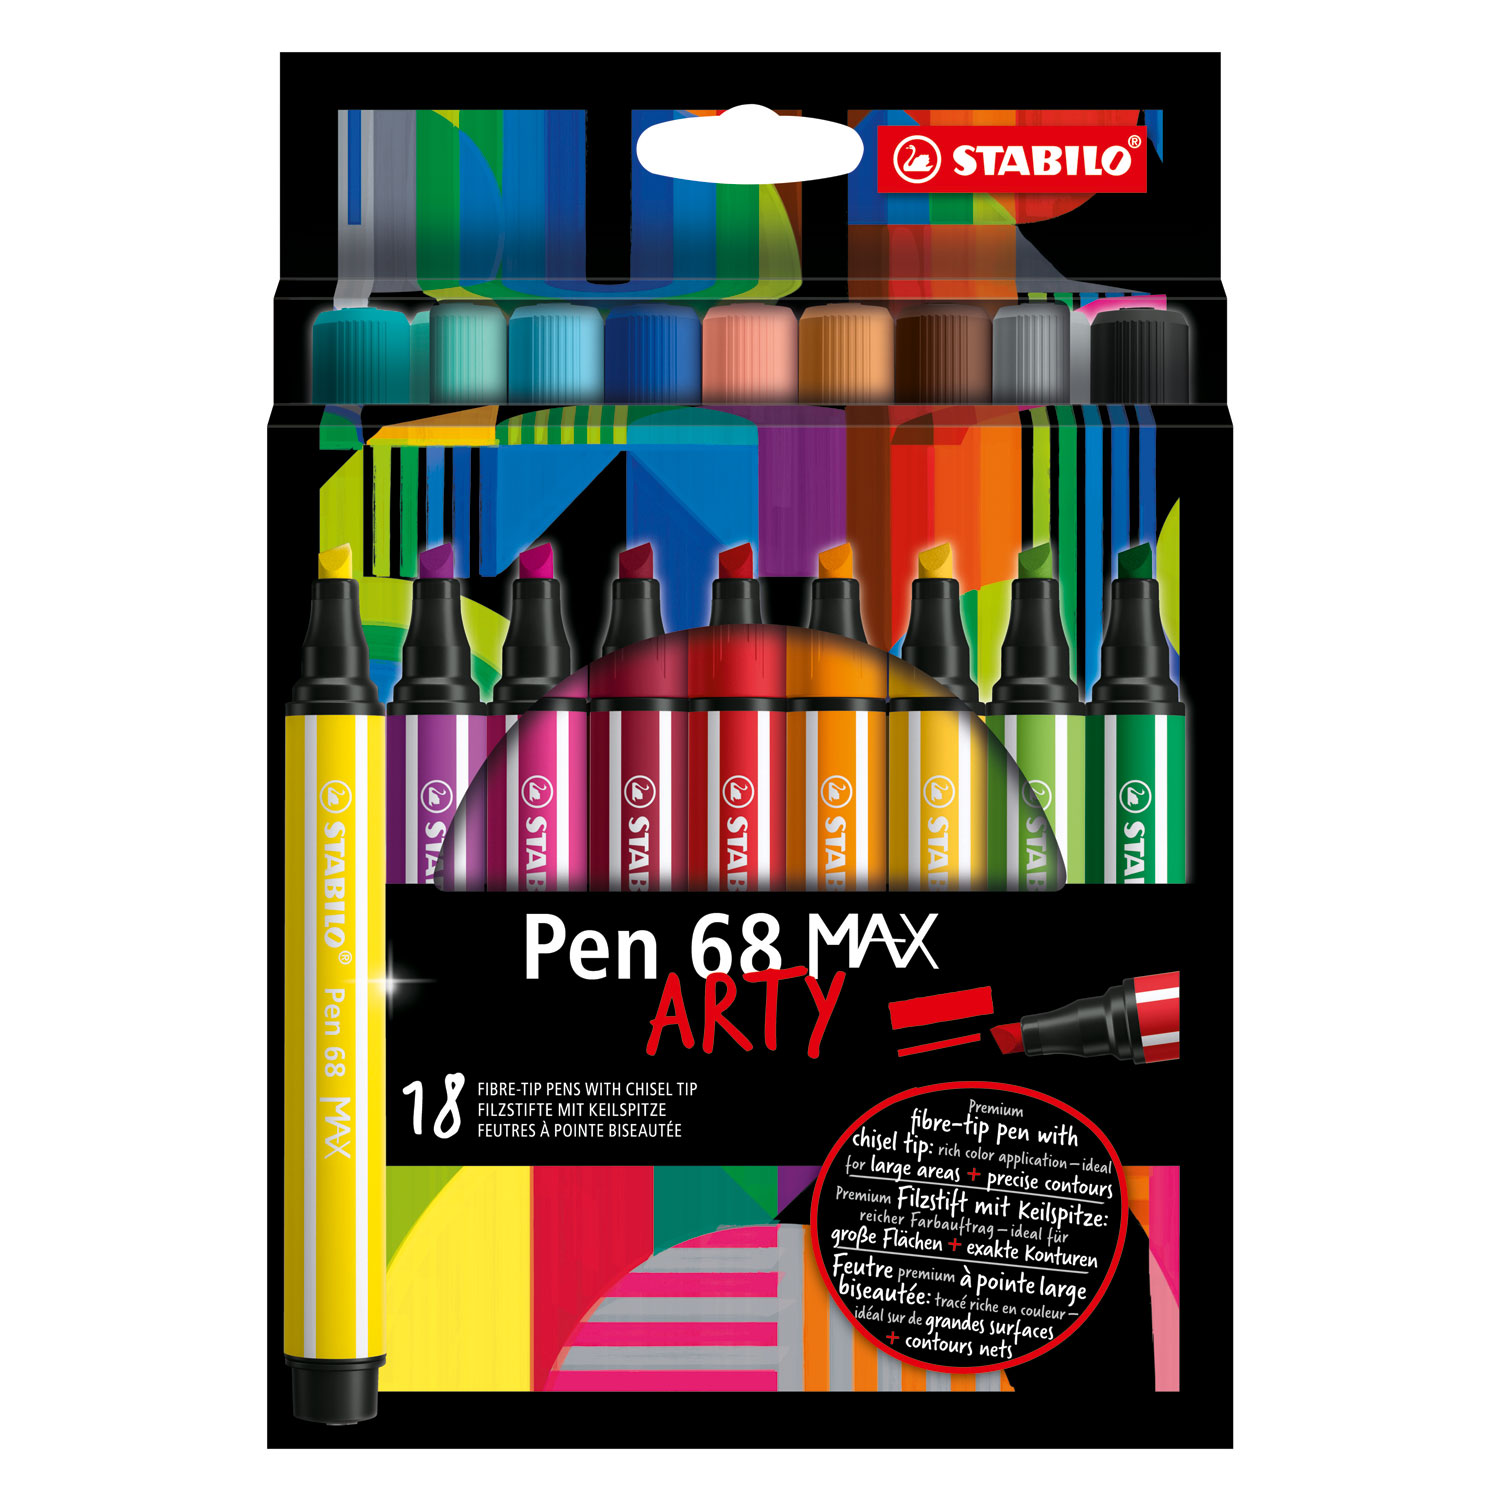 Acheter STABILO Pen 68 MAX ARTY - Feutre avec étui à